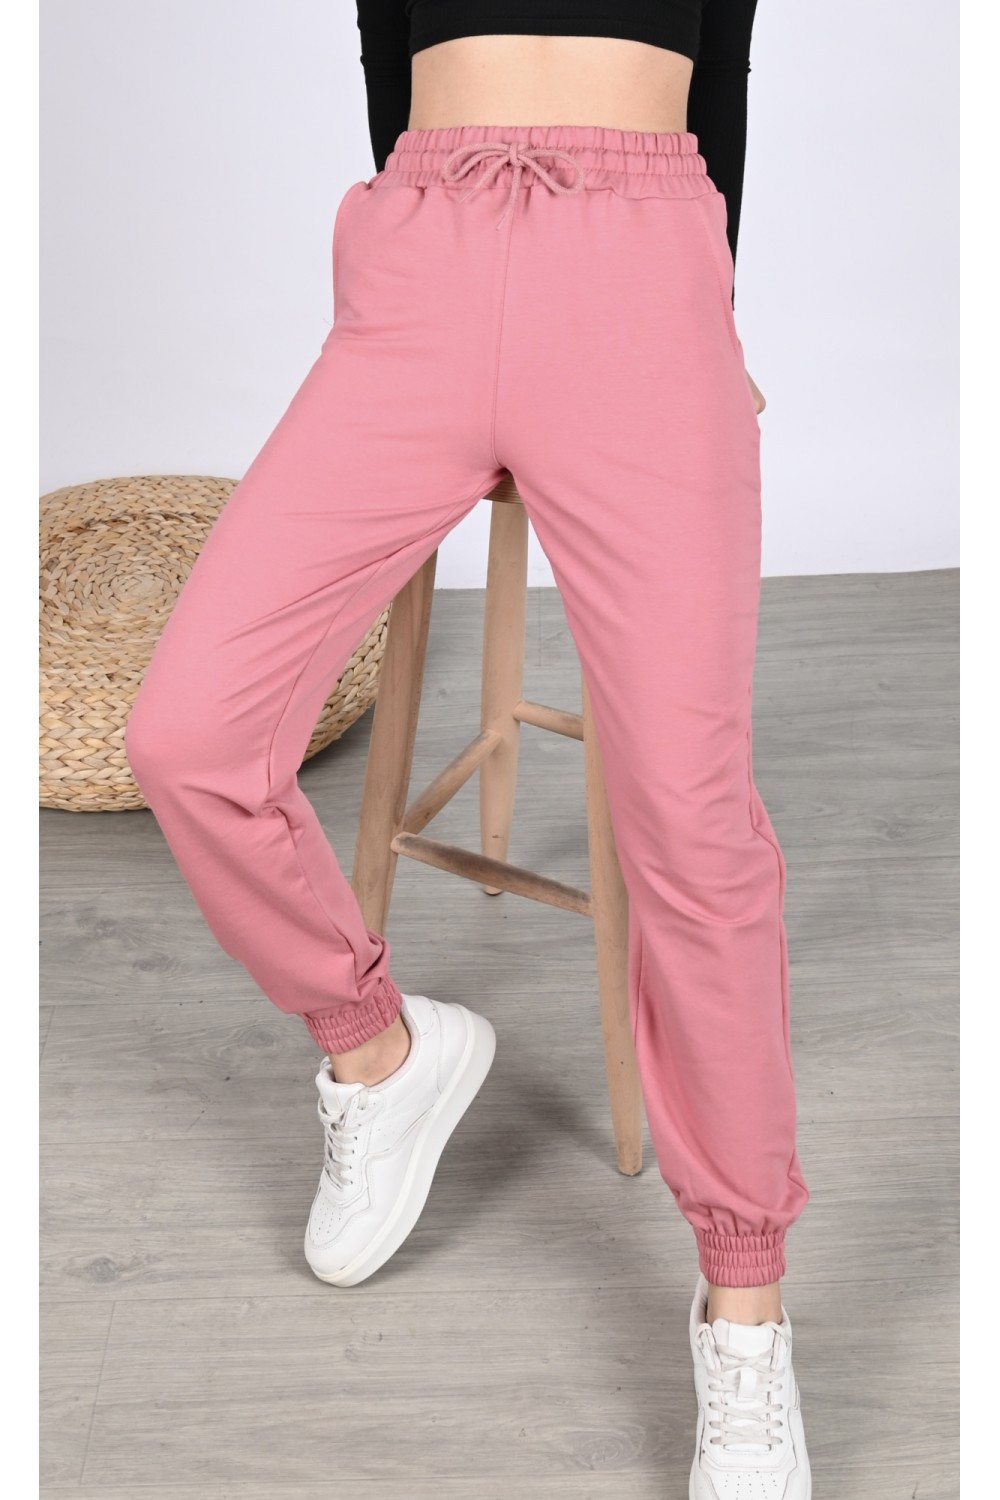 Pantaloni lungi de trening de culoare roz din bumbac